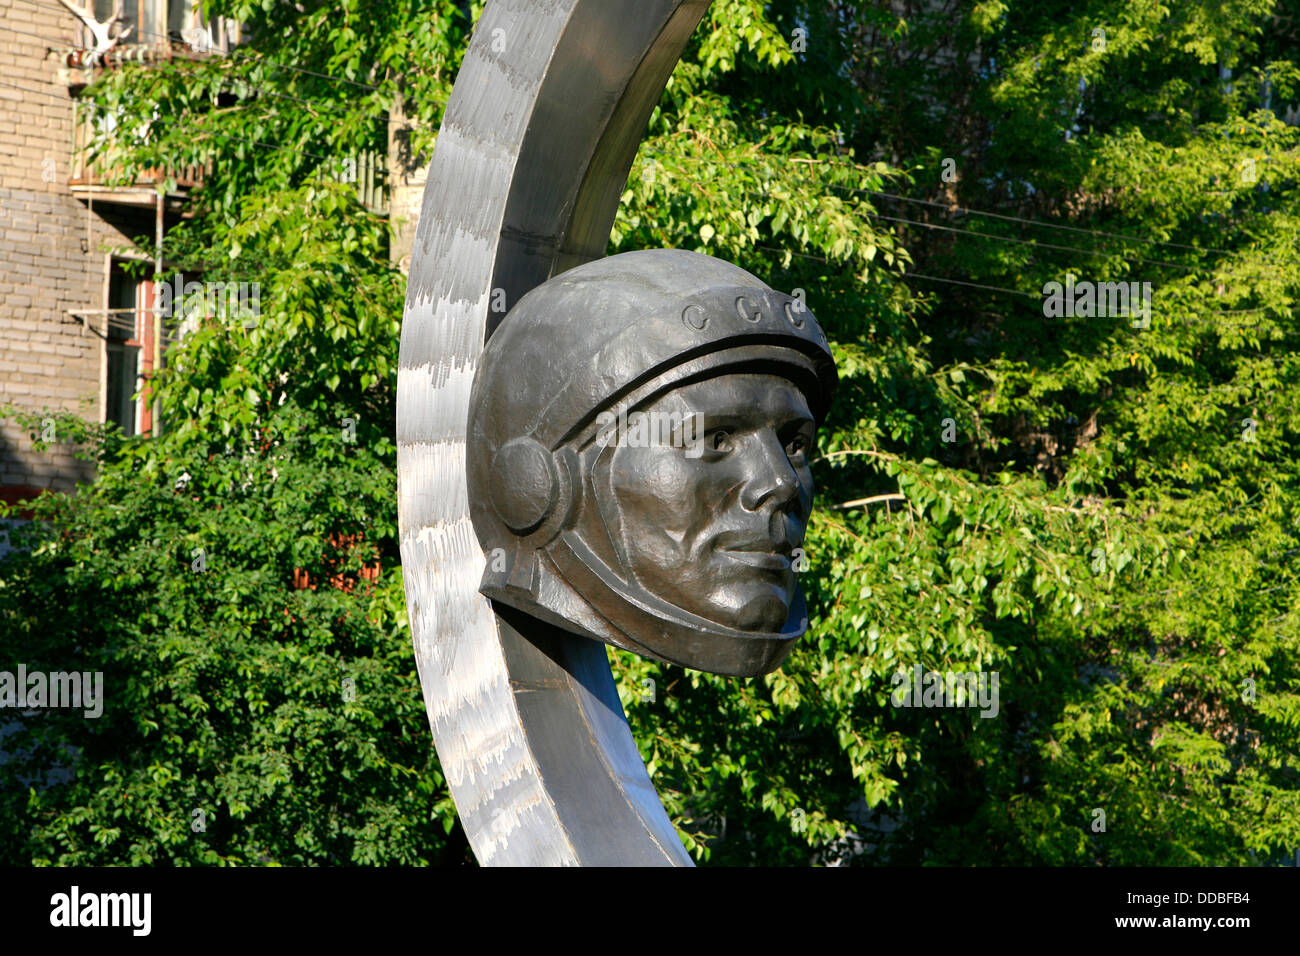 Monument à la première personne dans l'espace, le cosmonaute Youri Gagarine (1934-1968), en Russie, Kolomna Banque D'Images